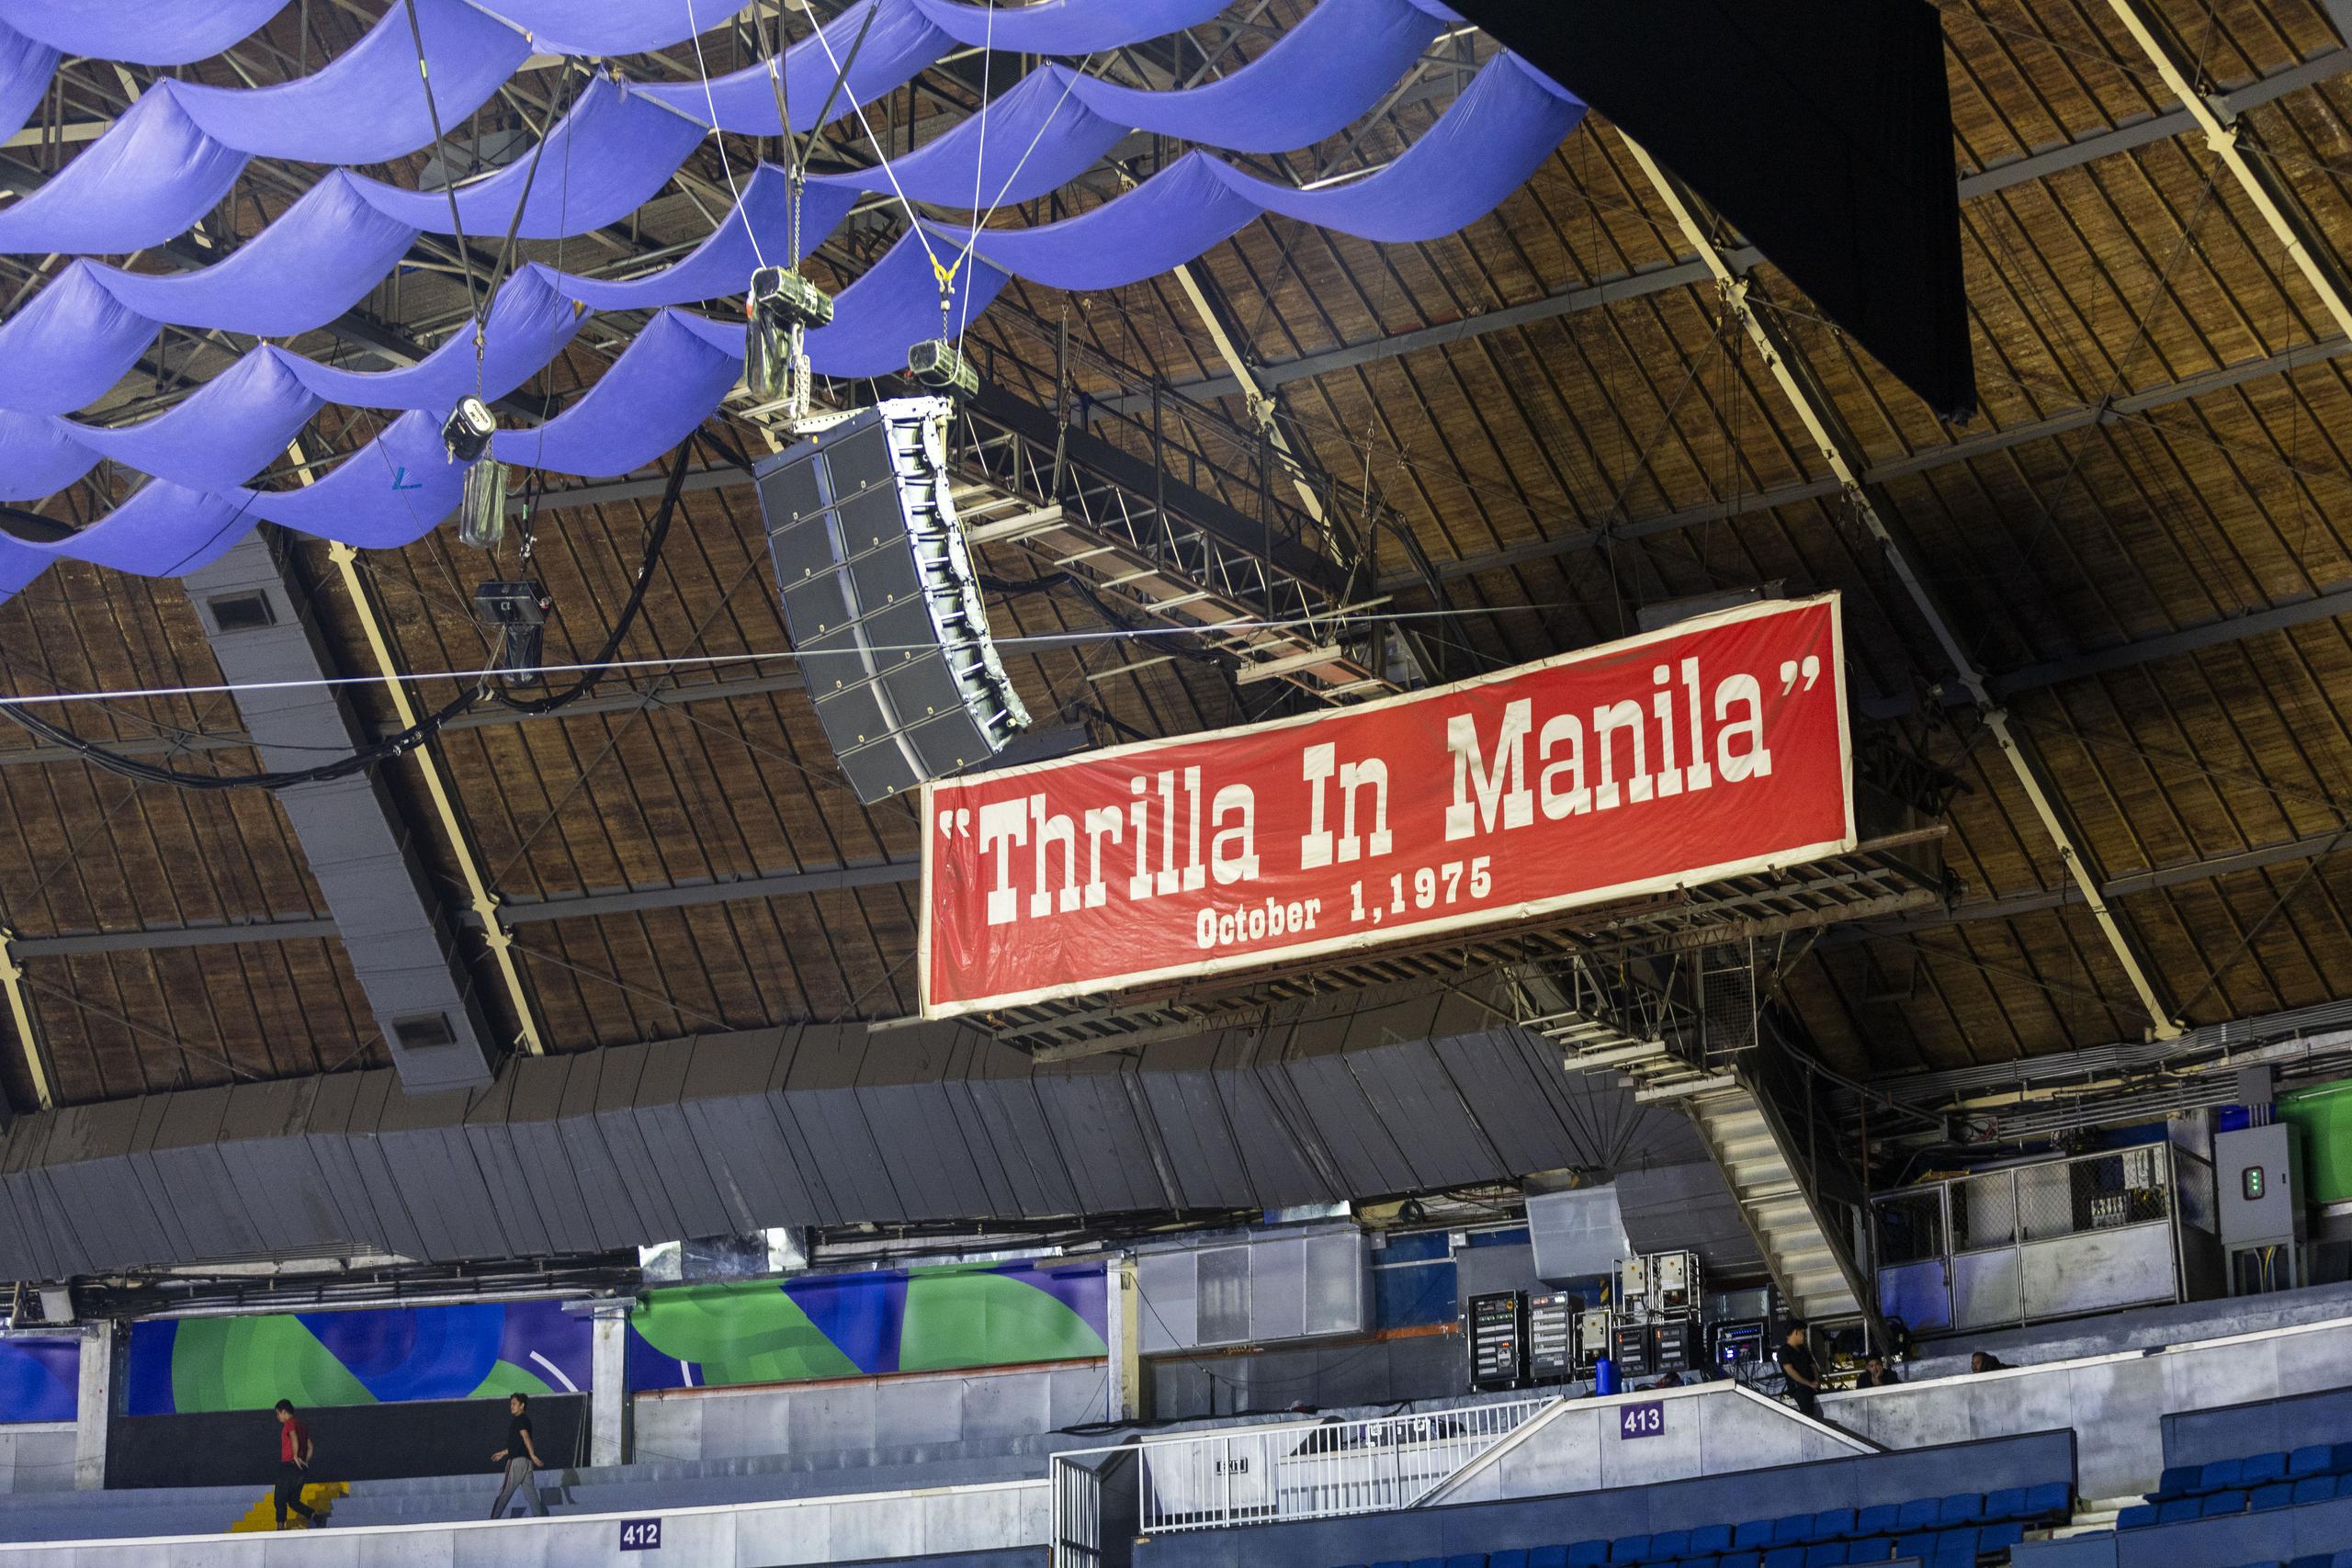 Un cartel que lee “Thrilla in Manila” alusivo a la pelea que sostuvo Muhamed Ali con Joe Frazier el 1 de octubre de 1976 cuelga del techo del Smart Araneta Coliseum.